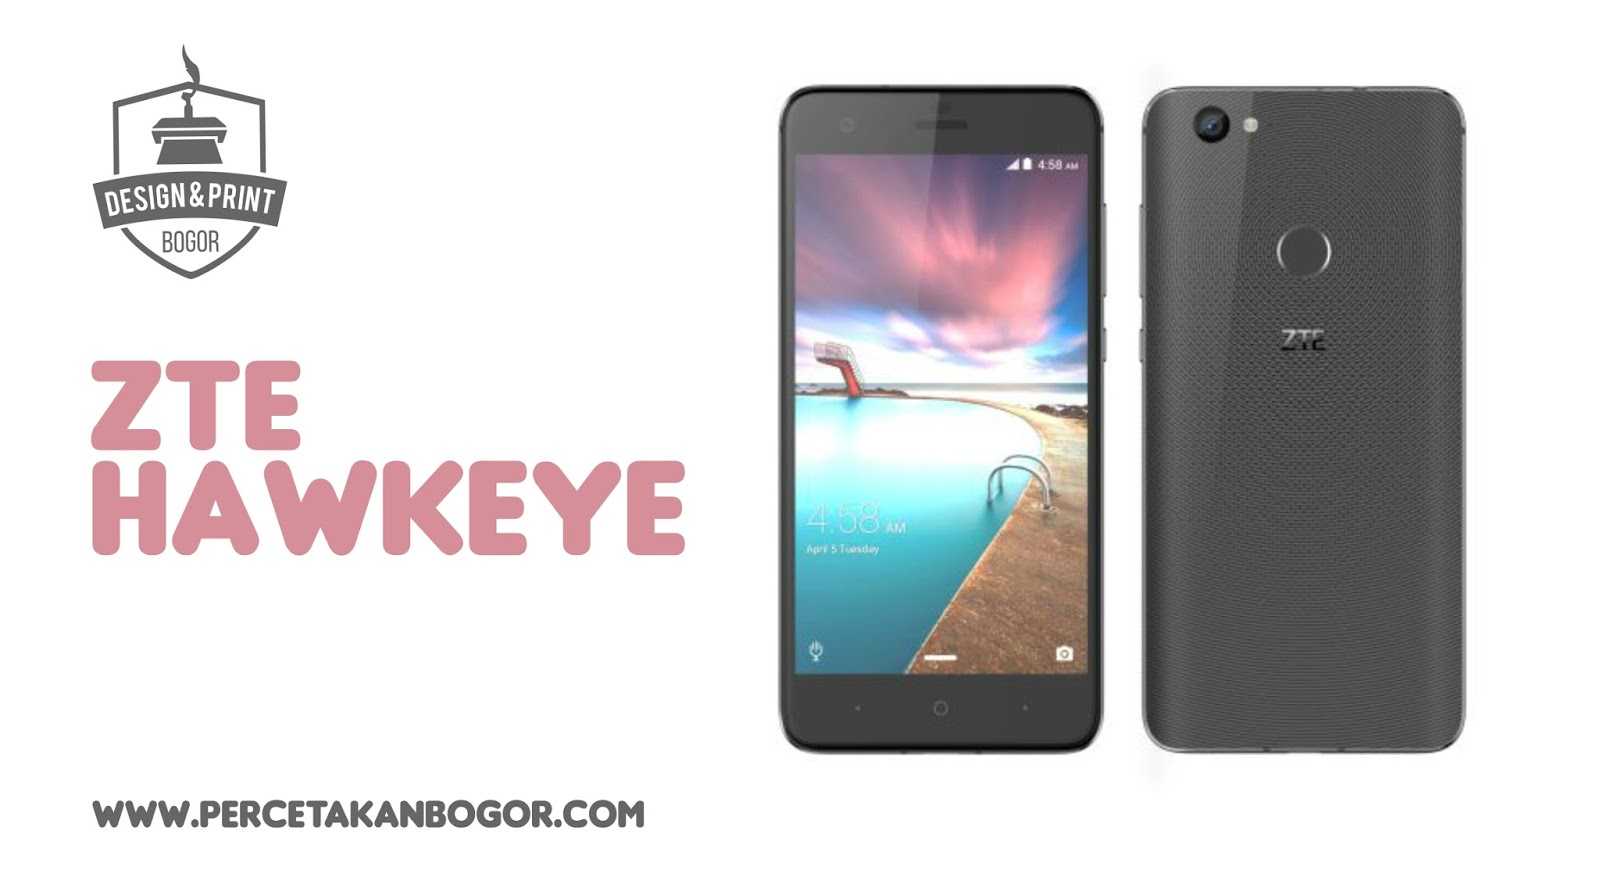 Мобильный телефон ZTE Hawkeye - подробные характеристики обзоры видео фото Цены в интернет-магазинах где можно купить мобильный телефон ZTE Hawkeye